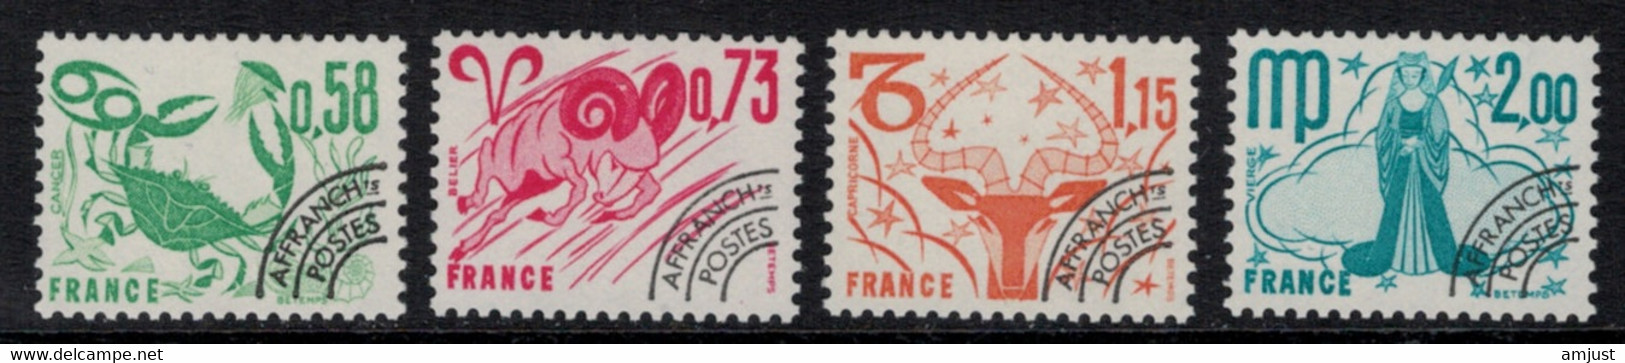 France // Préoblitérés // 1978 // Série Timbres Préoblitérés Neufs** MNH No. Y&T 150 à 153 (Signes Du Zodiaque) - 1964-1988